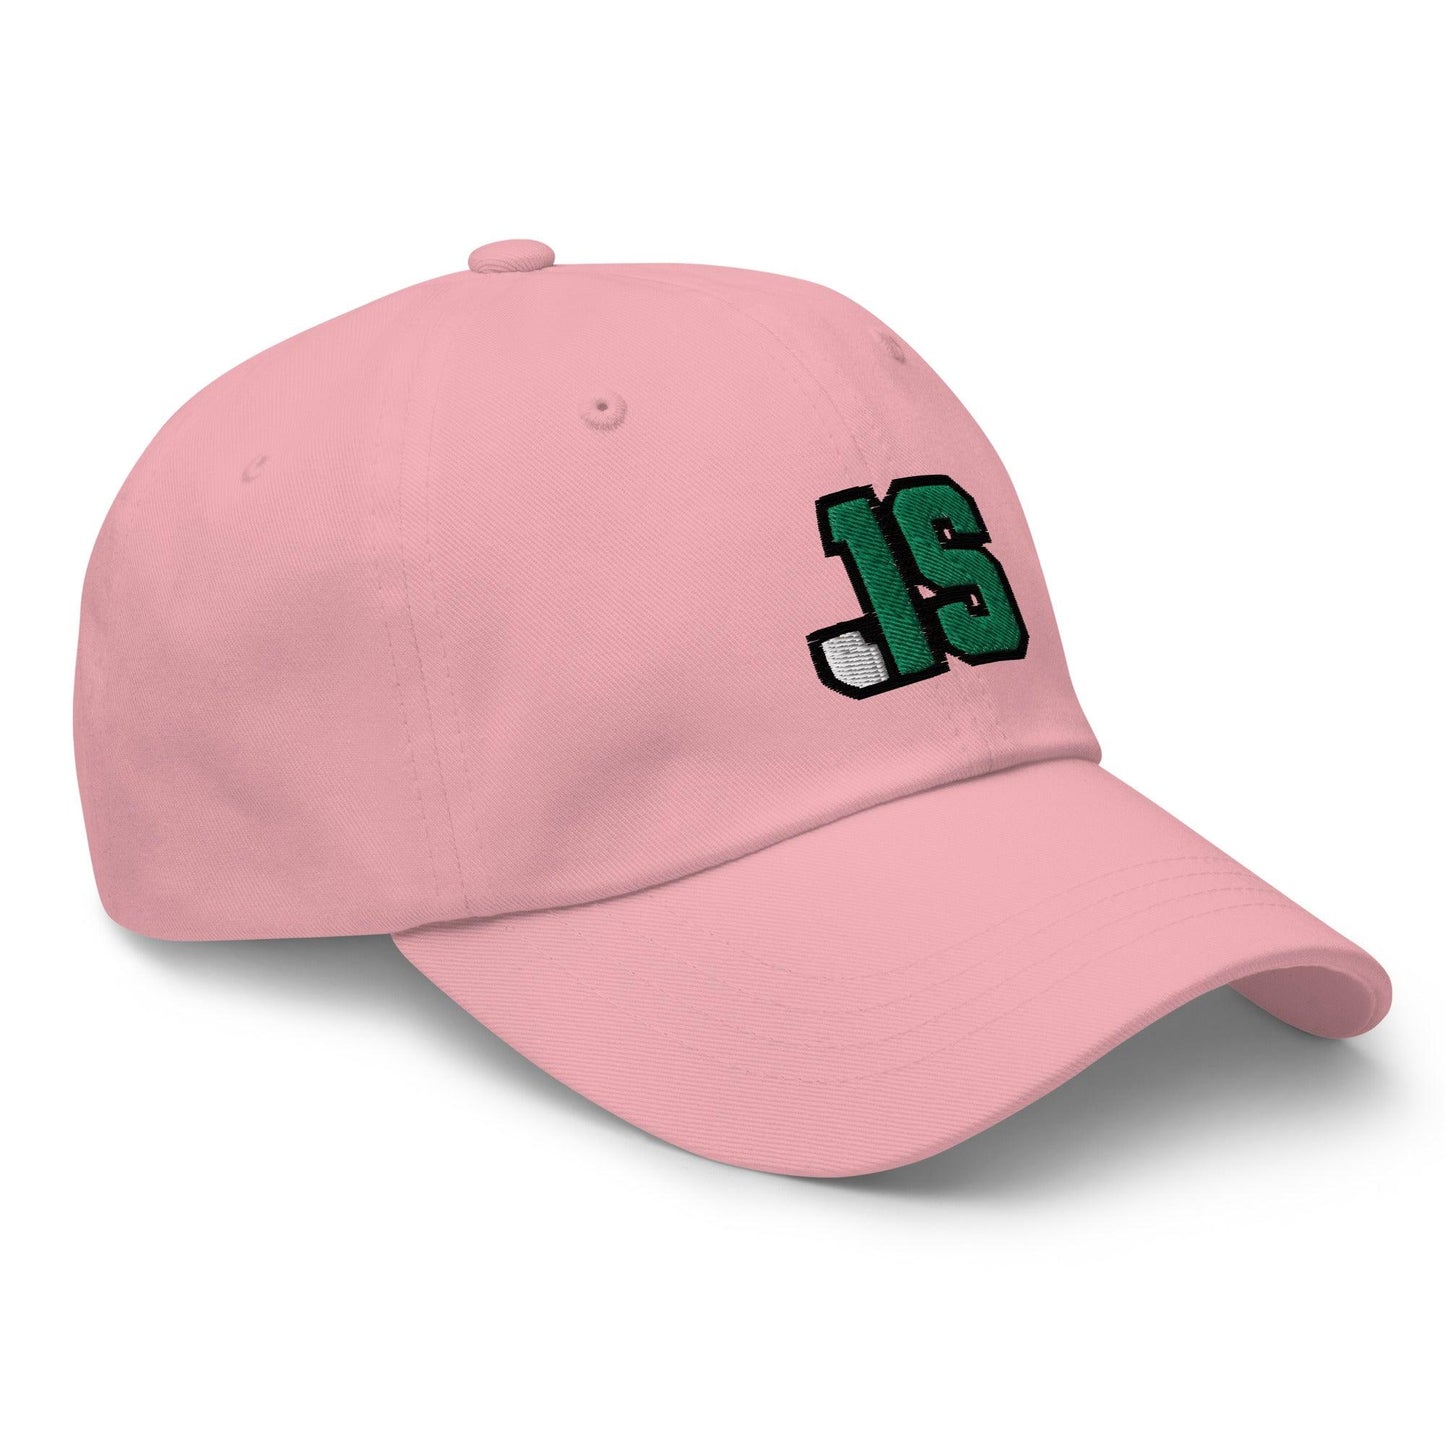 Jyaire Shorter "JS1" hat - Fan Arch